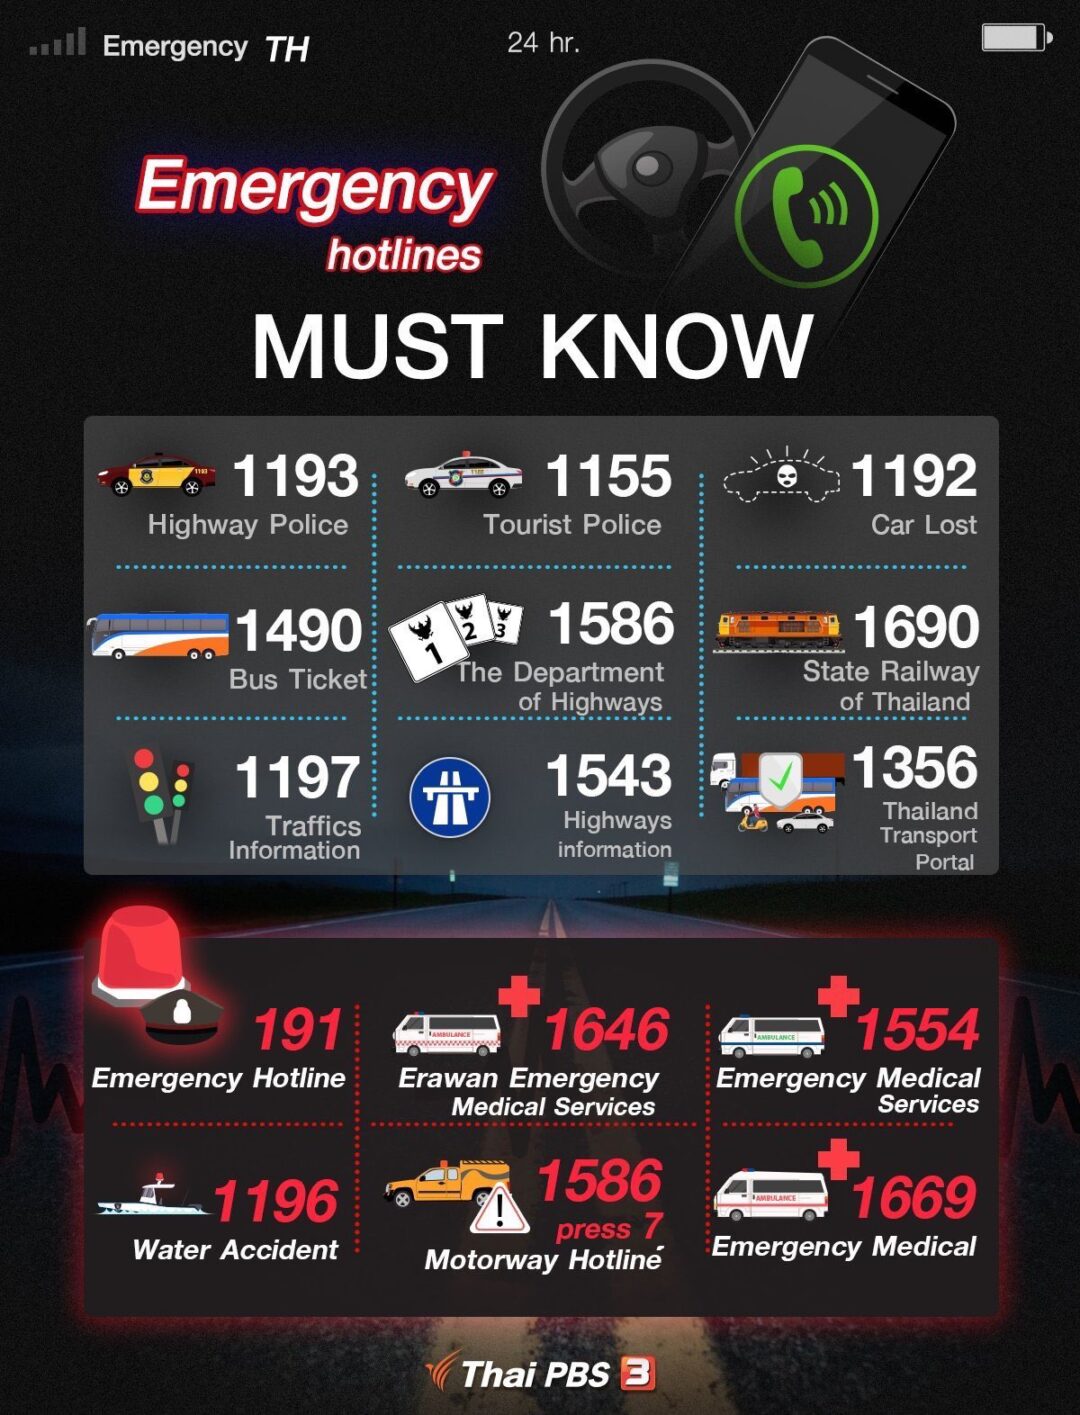 Les numéros d’urgence à connaître en Thaïlande